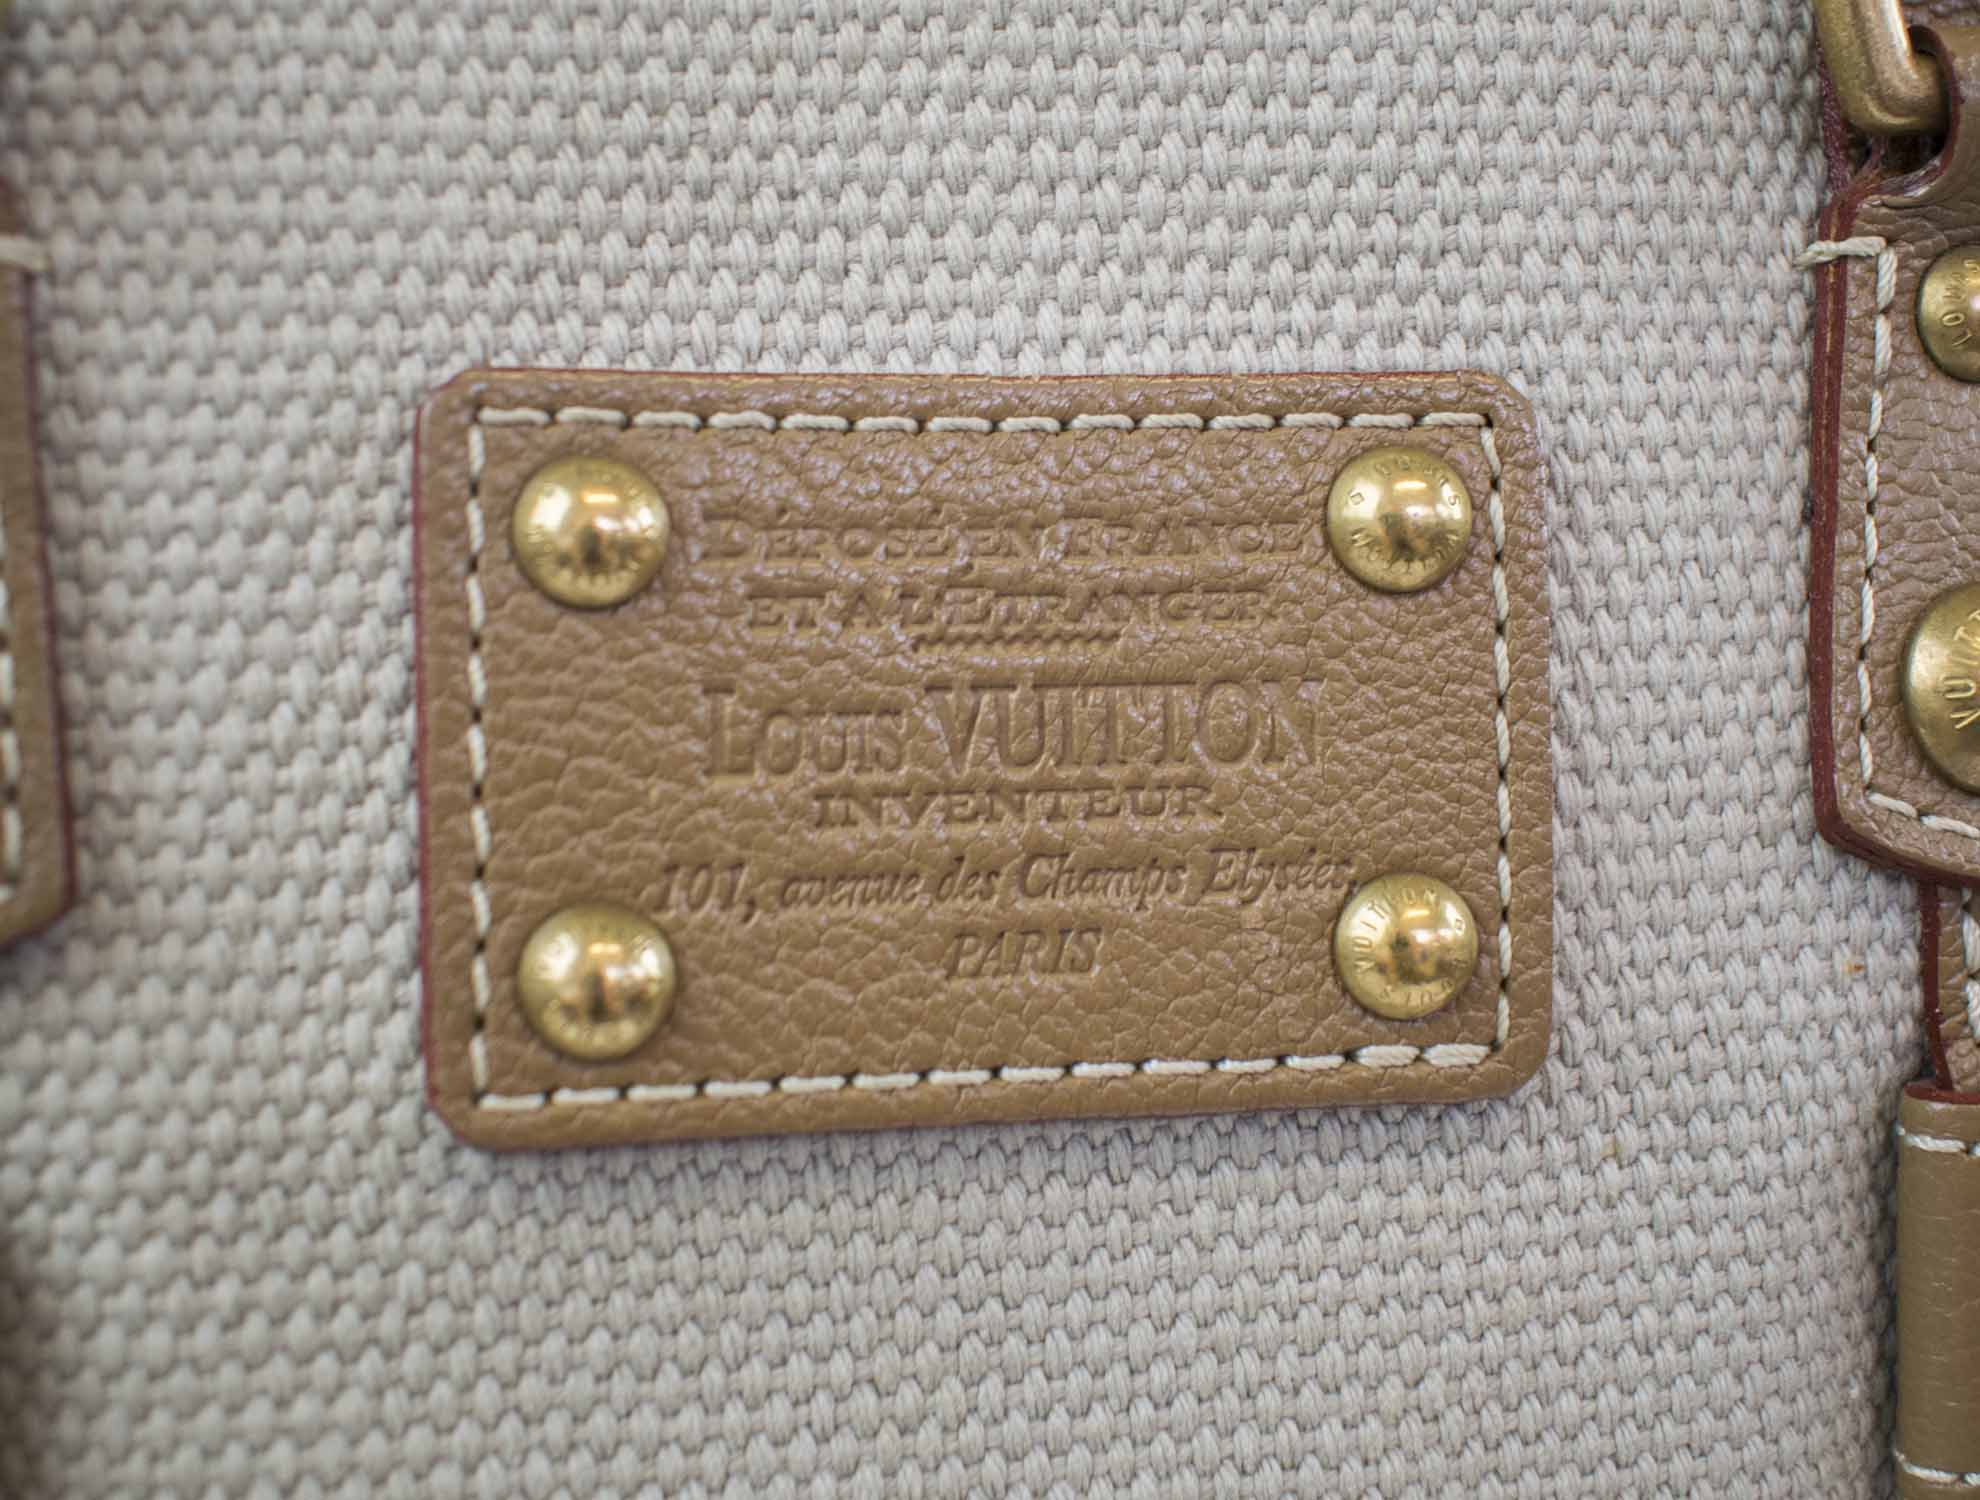 Sold at Auction: Louis Vuitton, Louis Vuitton Inventeur Crossbody